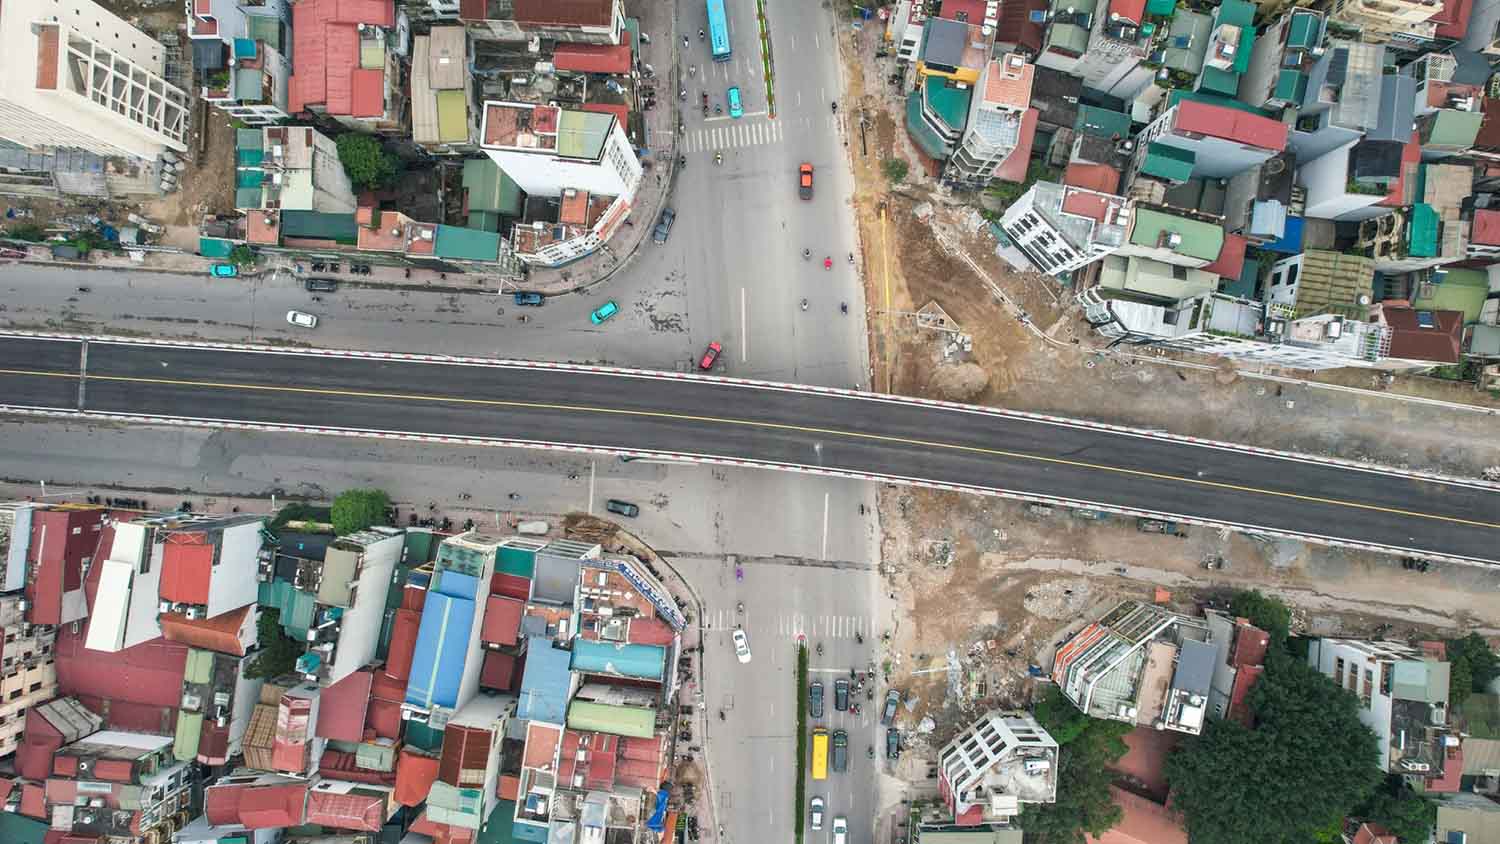 Điểm nhấn của tuyến đường là cầu vượt thép trên phố Hồng Tiến, vượt qua đường Nguyễn Văn Cừ, với chiều dài và đường dẫn khoảng 400 m, được thiết kế 2 làn xe cơ giới và 2 làn xe hỗn hợp. 